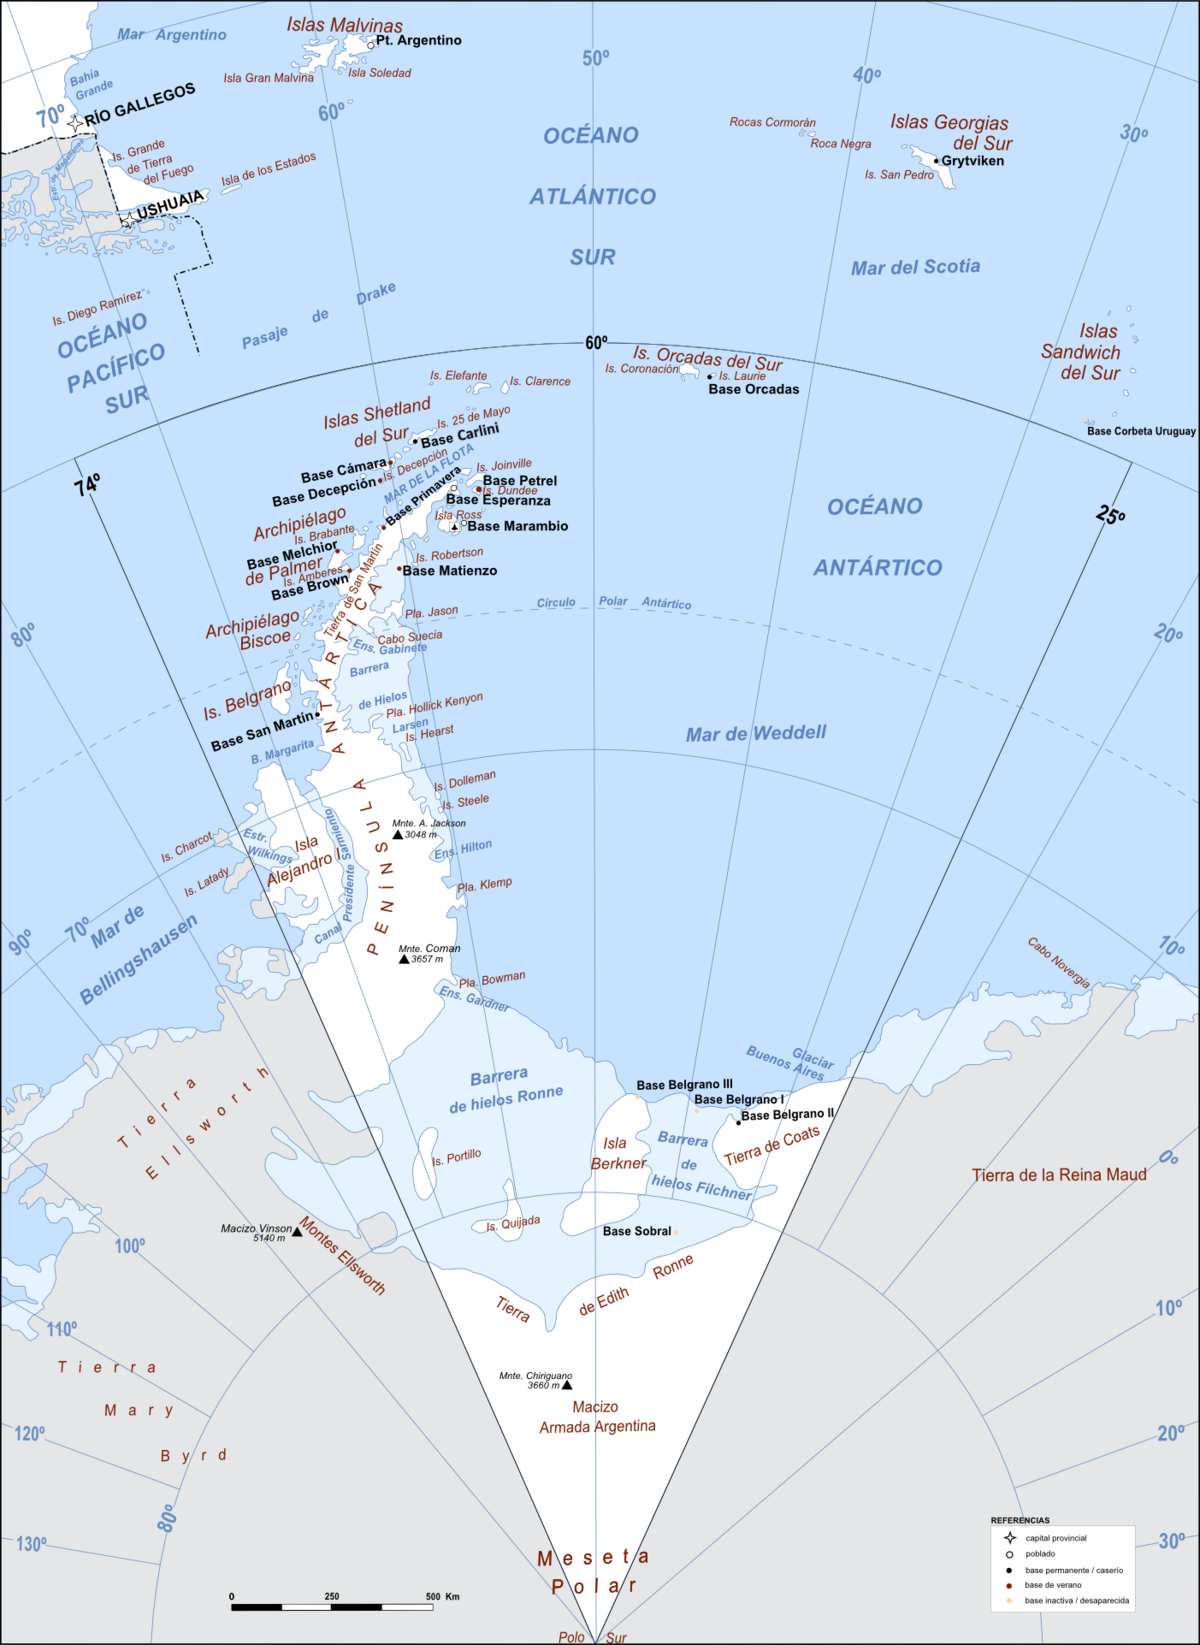 Departamento Antártida Argentina - Wikipedia, la enciclopedia libre